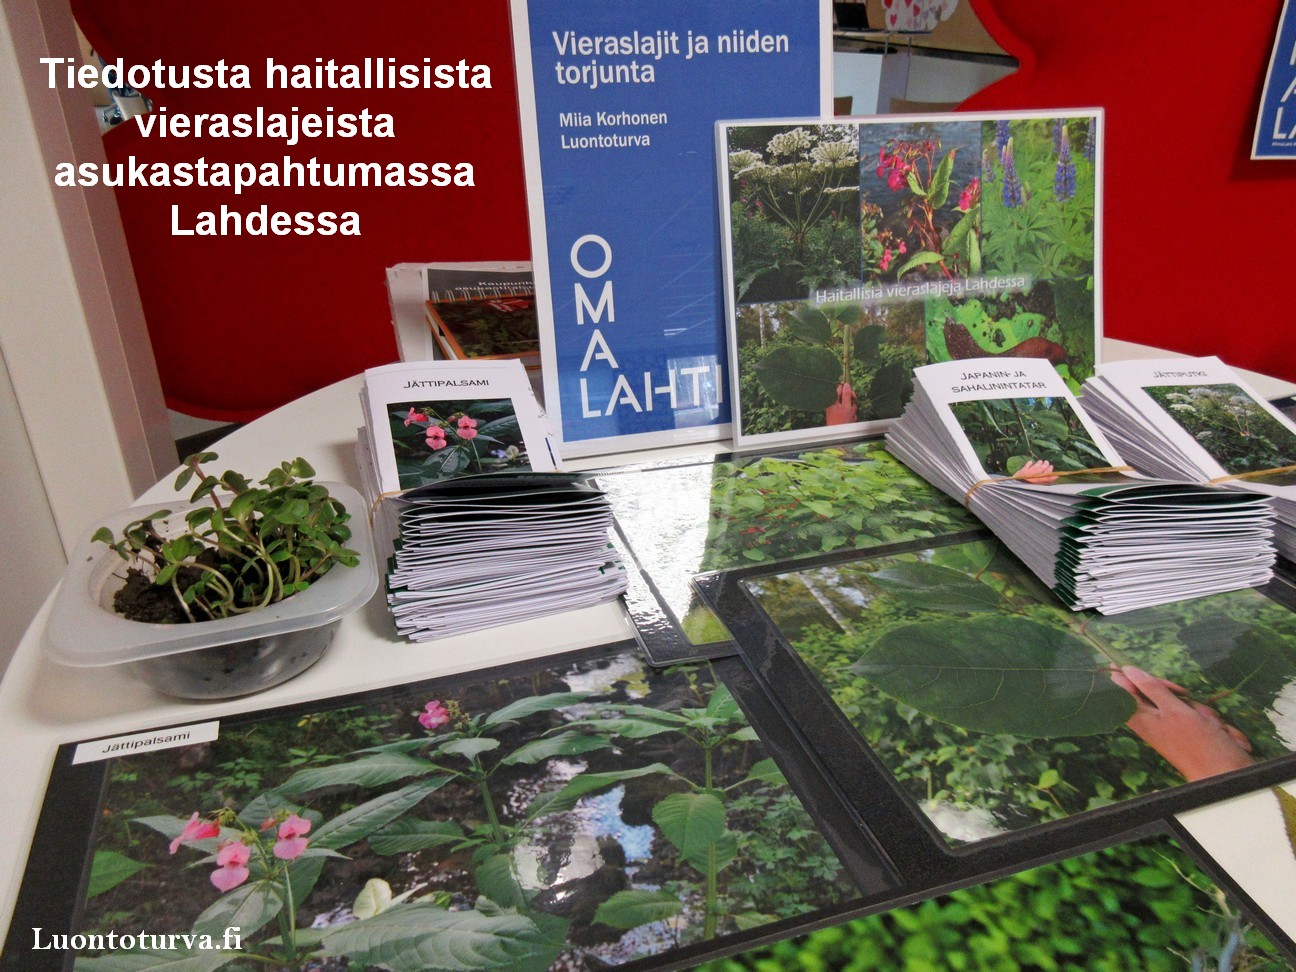 Lahdessa_tiedotusta_asukastilaisuus_Luontoturva.fi.JPG